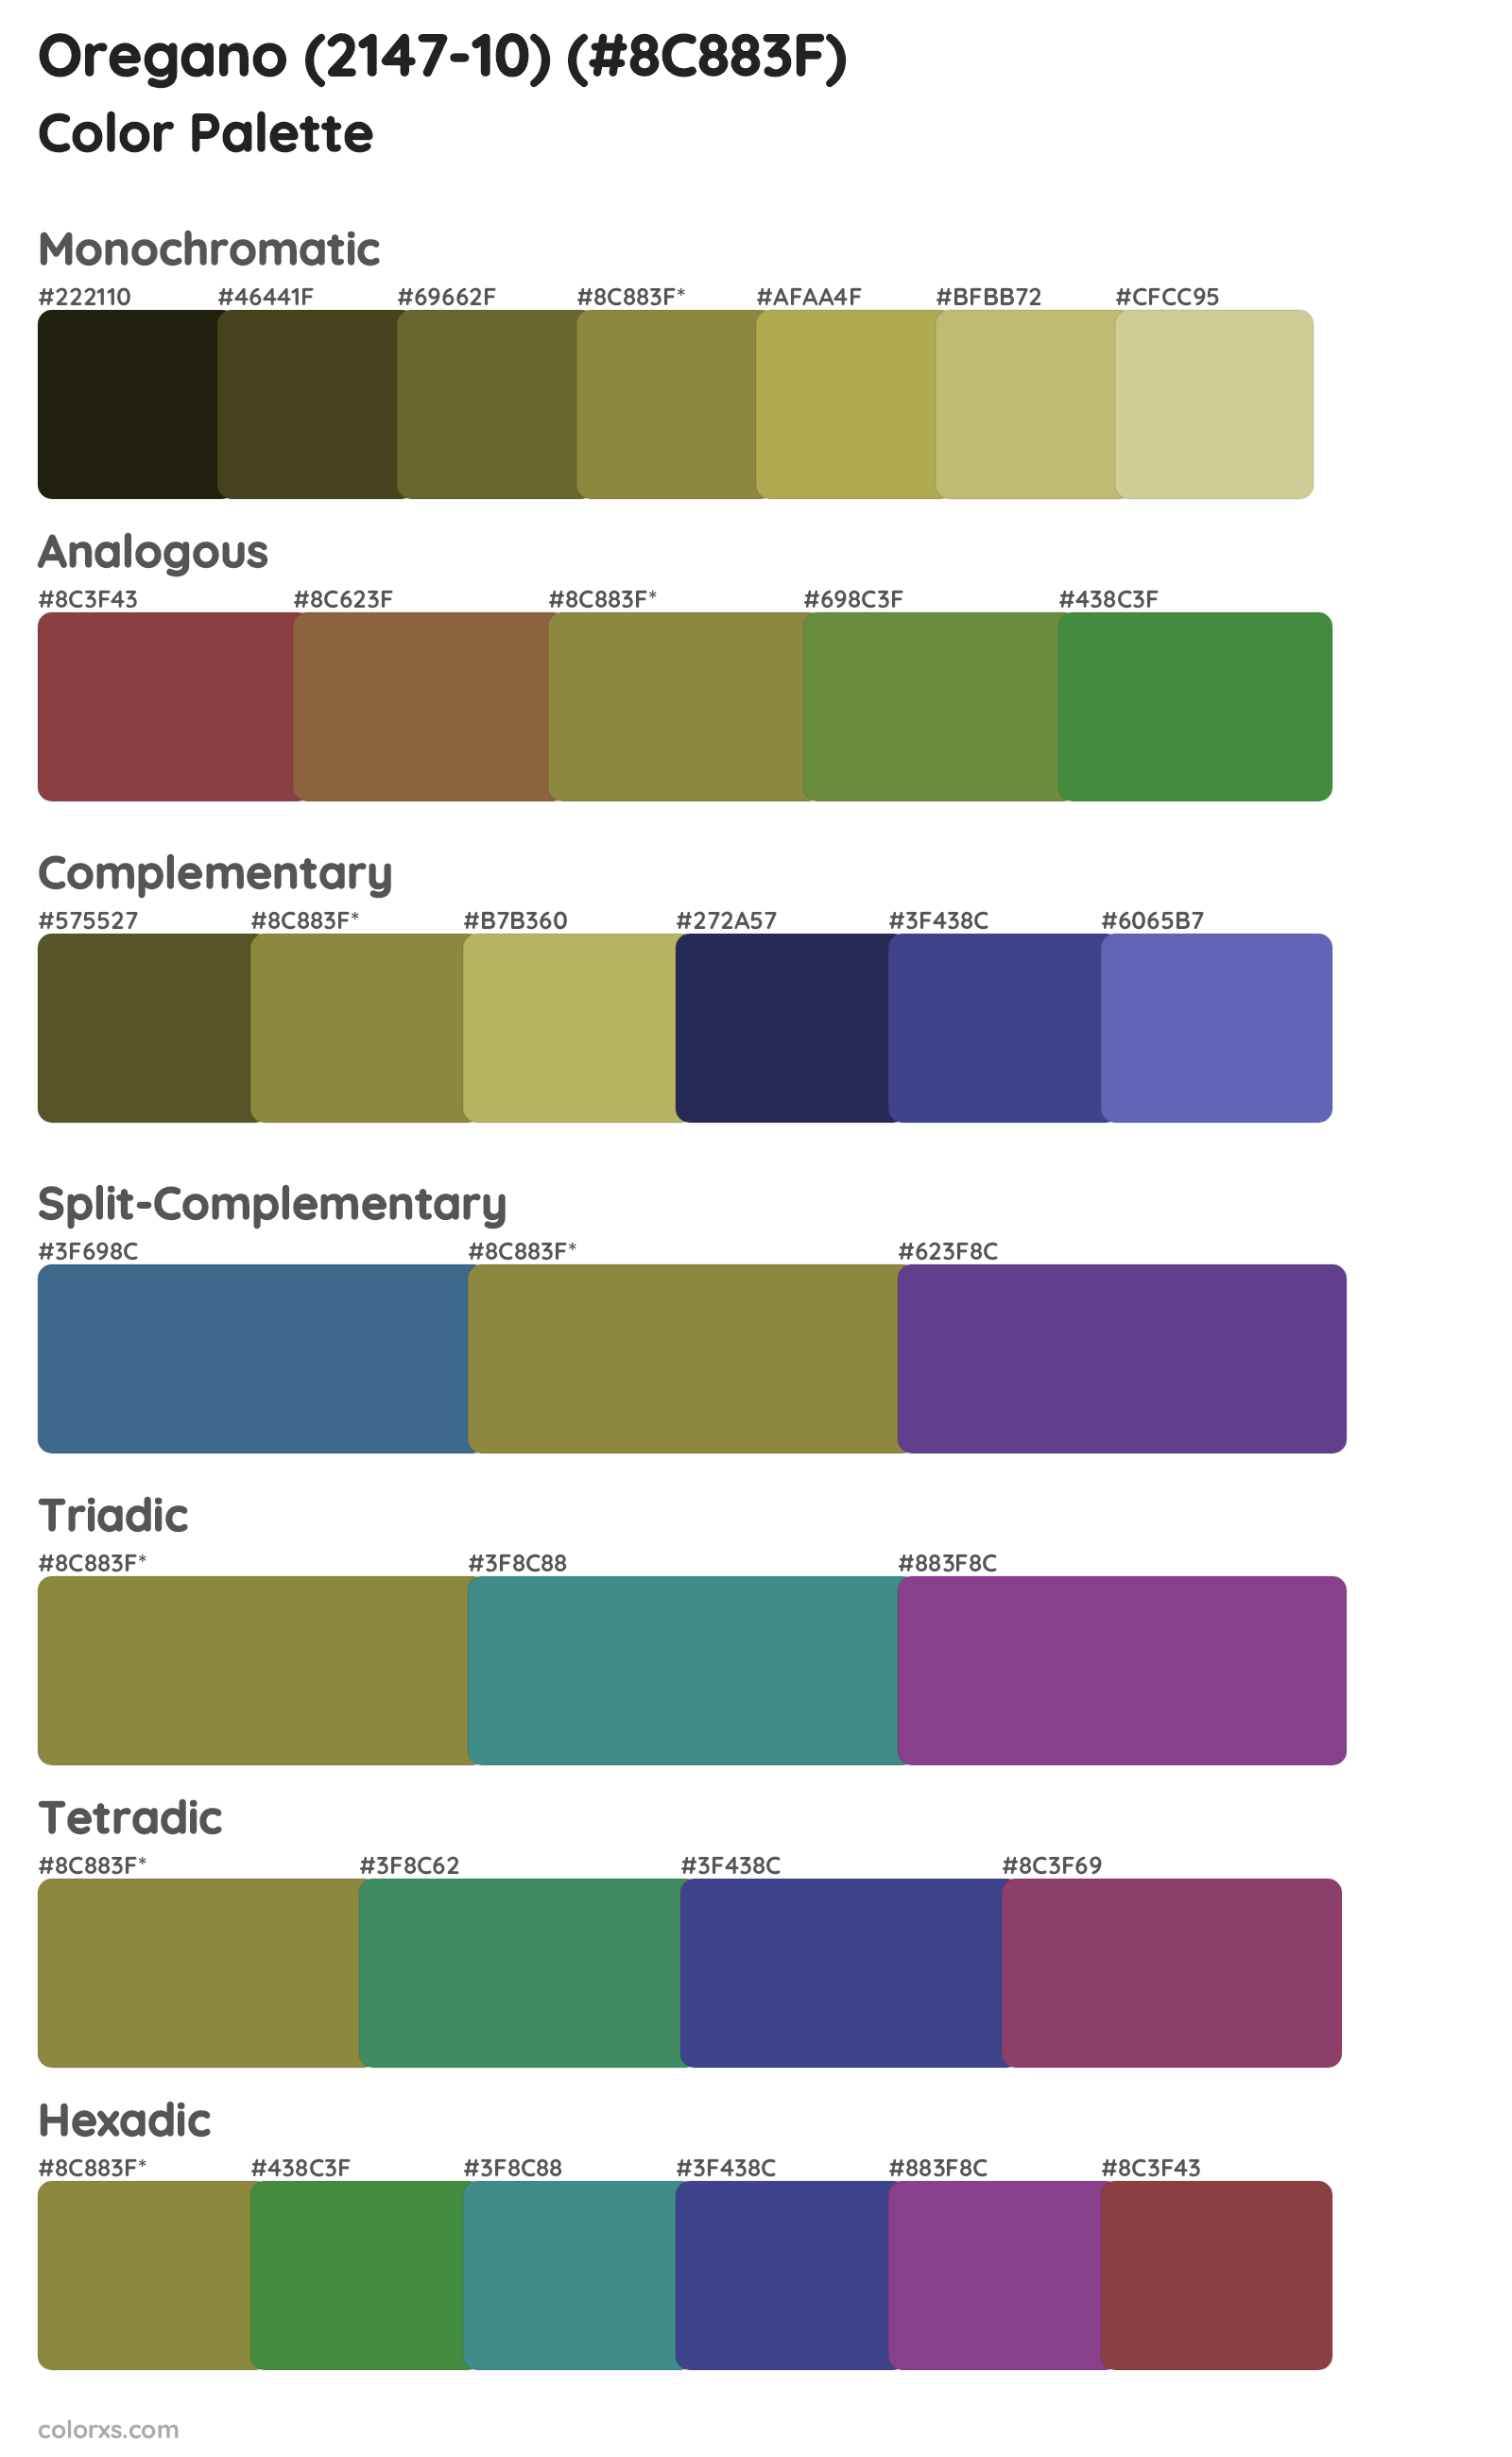 Oregano (2147-10) Color Scheme Palettes